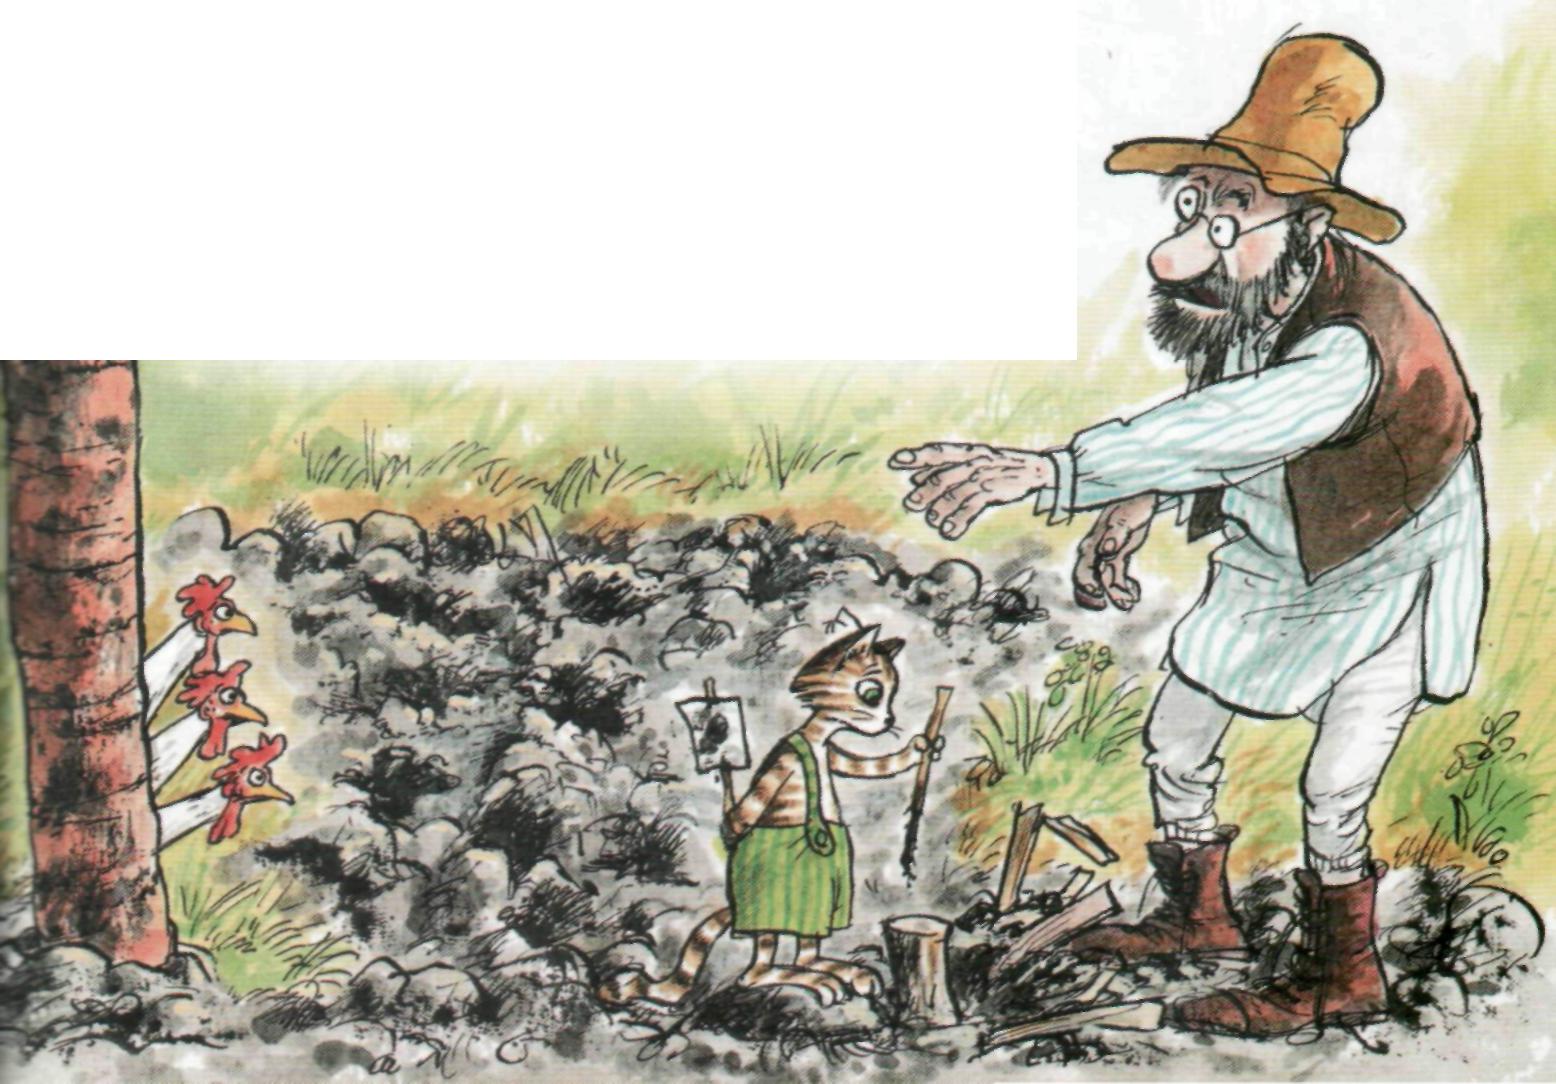 Читать сказку петсон и финдус: переполох в огороде - свен нурдквист, онлайн бесплатно с иллюстрациями.